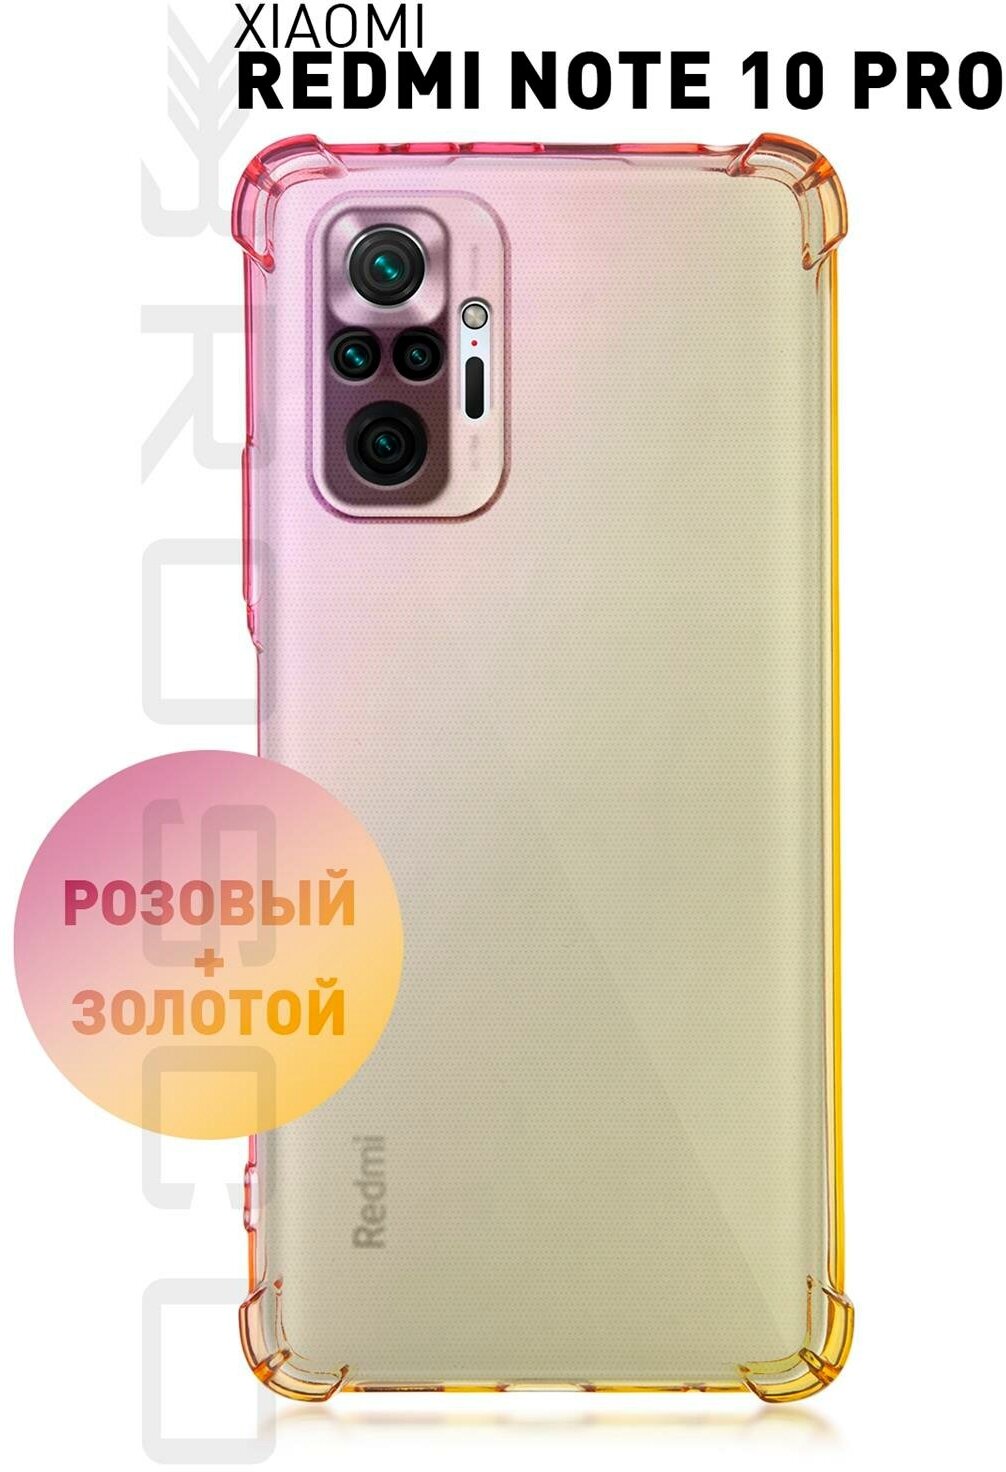 Противоударный чехол ROSCO для Xiaomi Redmi Note 10 Pro (Сяоми Редми Ноут 10 Про) силиконовый усиленный, защита камер, прозрачный розовый-золотой